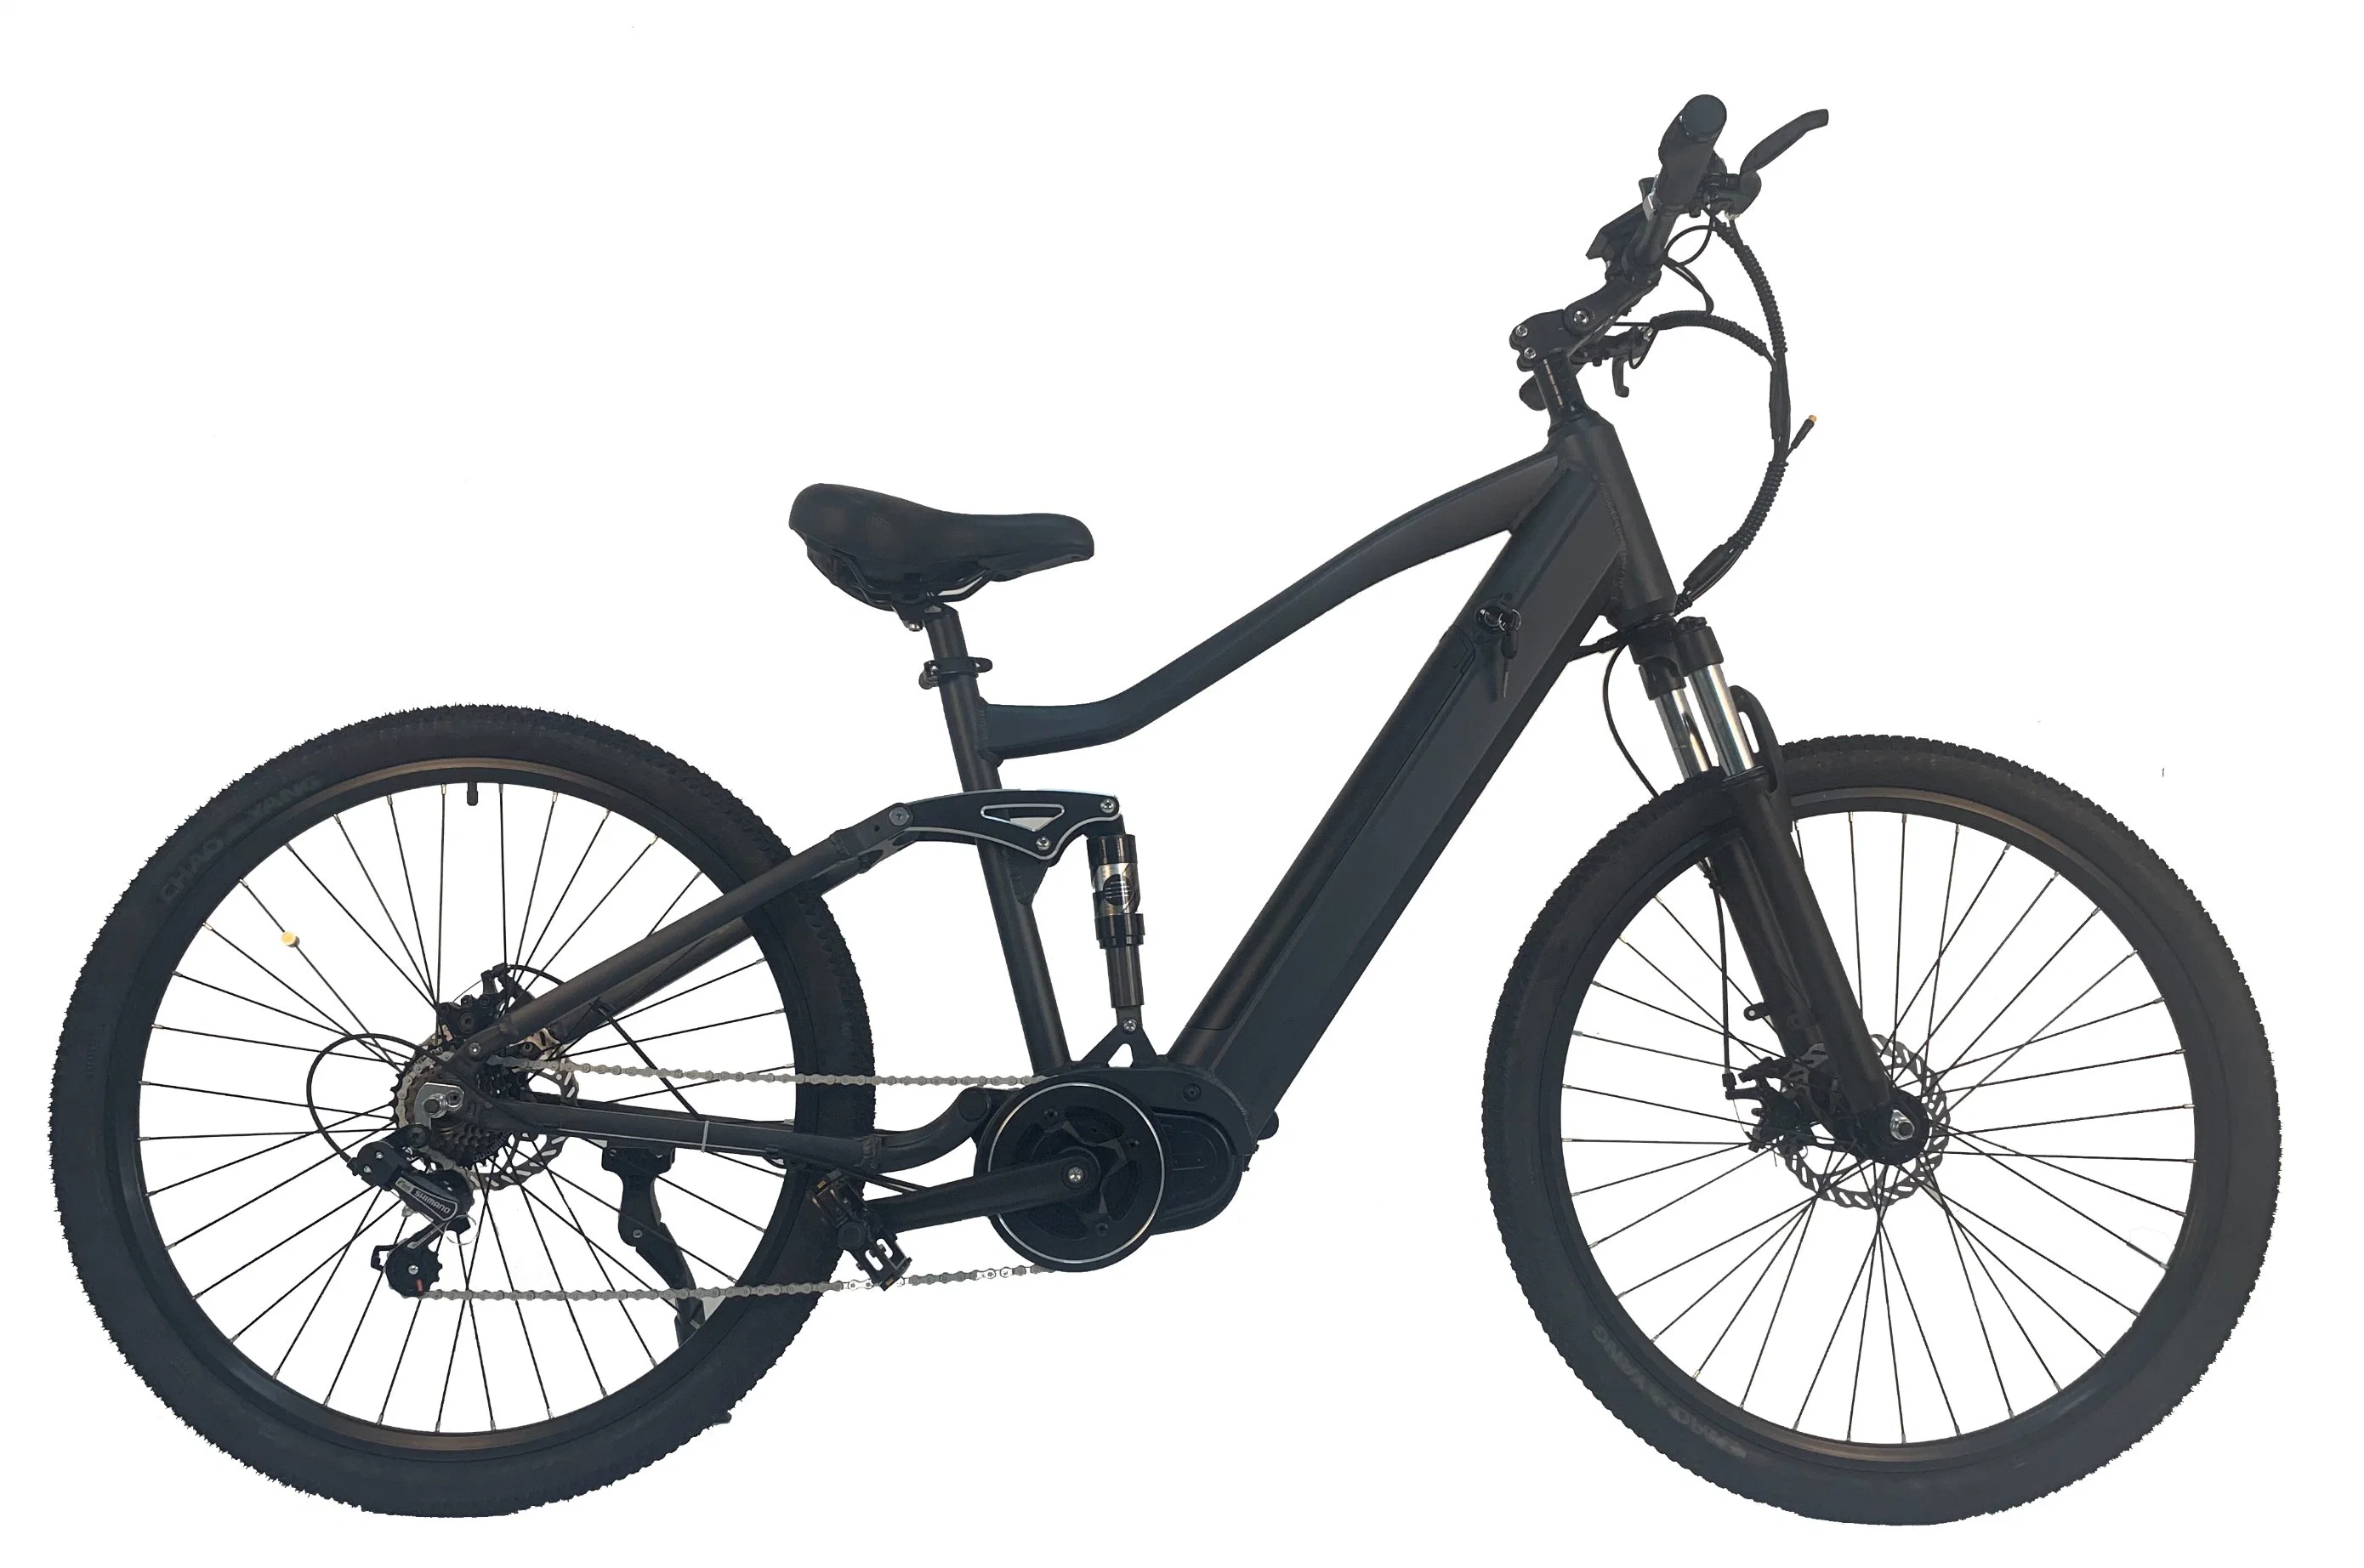 Ebike 1000W Fat E Bike 27.5 Ebike Conversion Kit MID Drive Road Bicycle Dirt Bike Electric 48V 12.5ah Ebike Battery